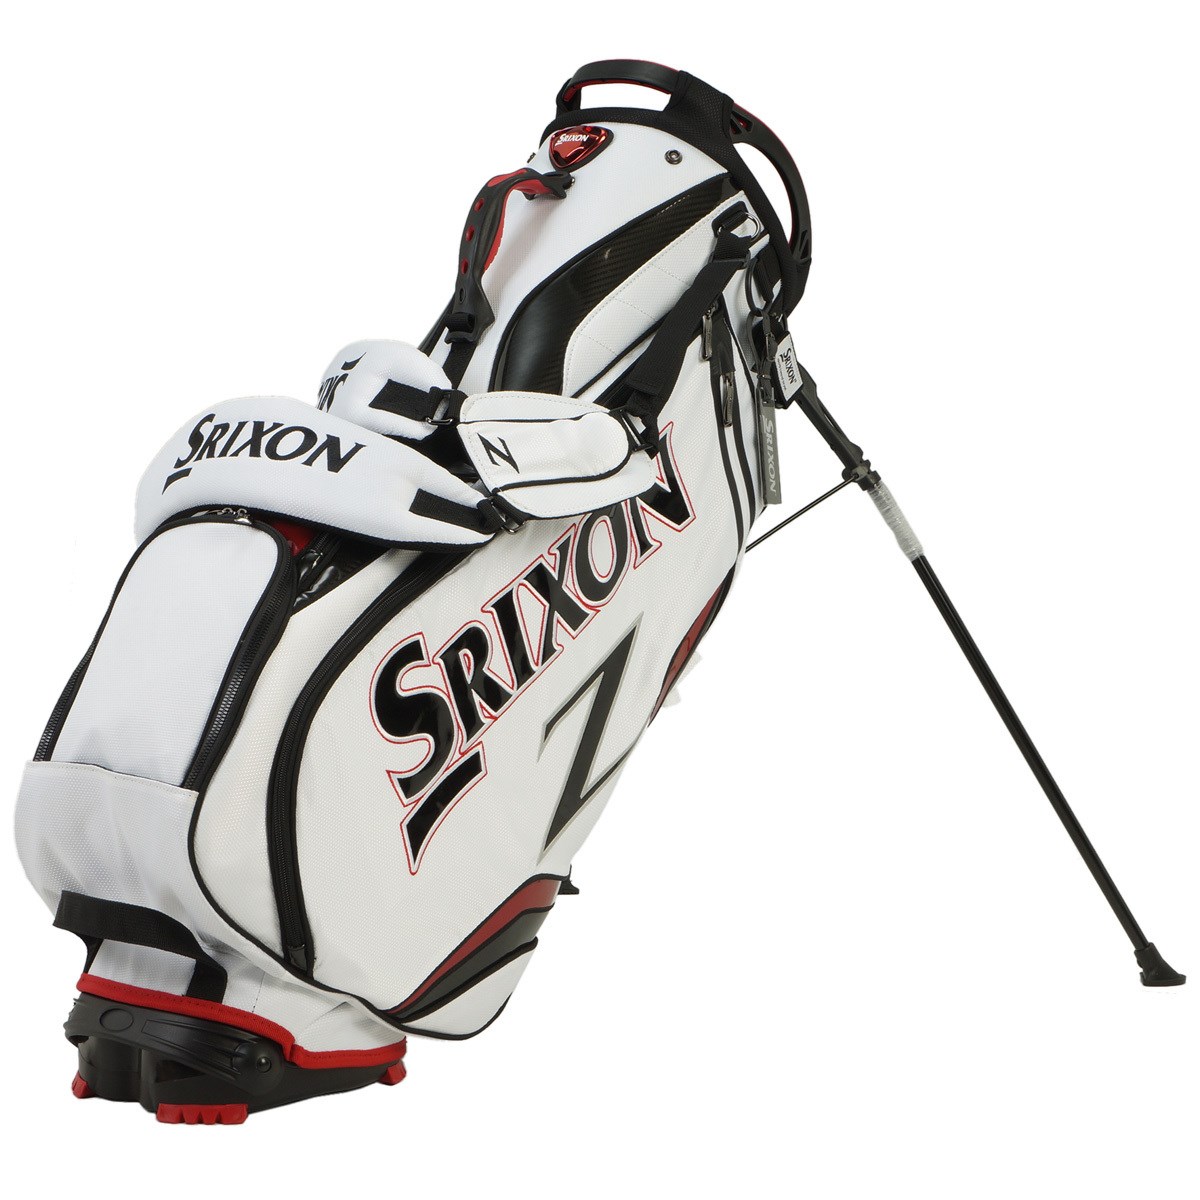 スリクソン SRIXON スタンド式 キャディバック ゴルフ